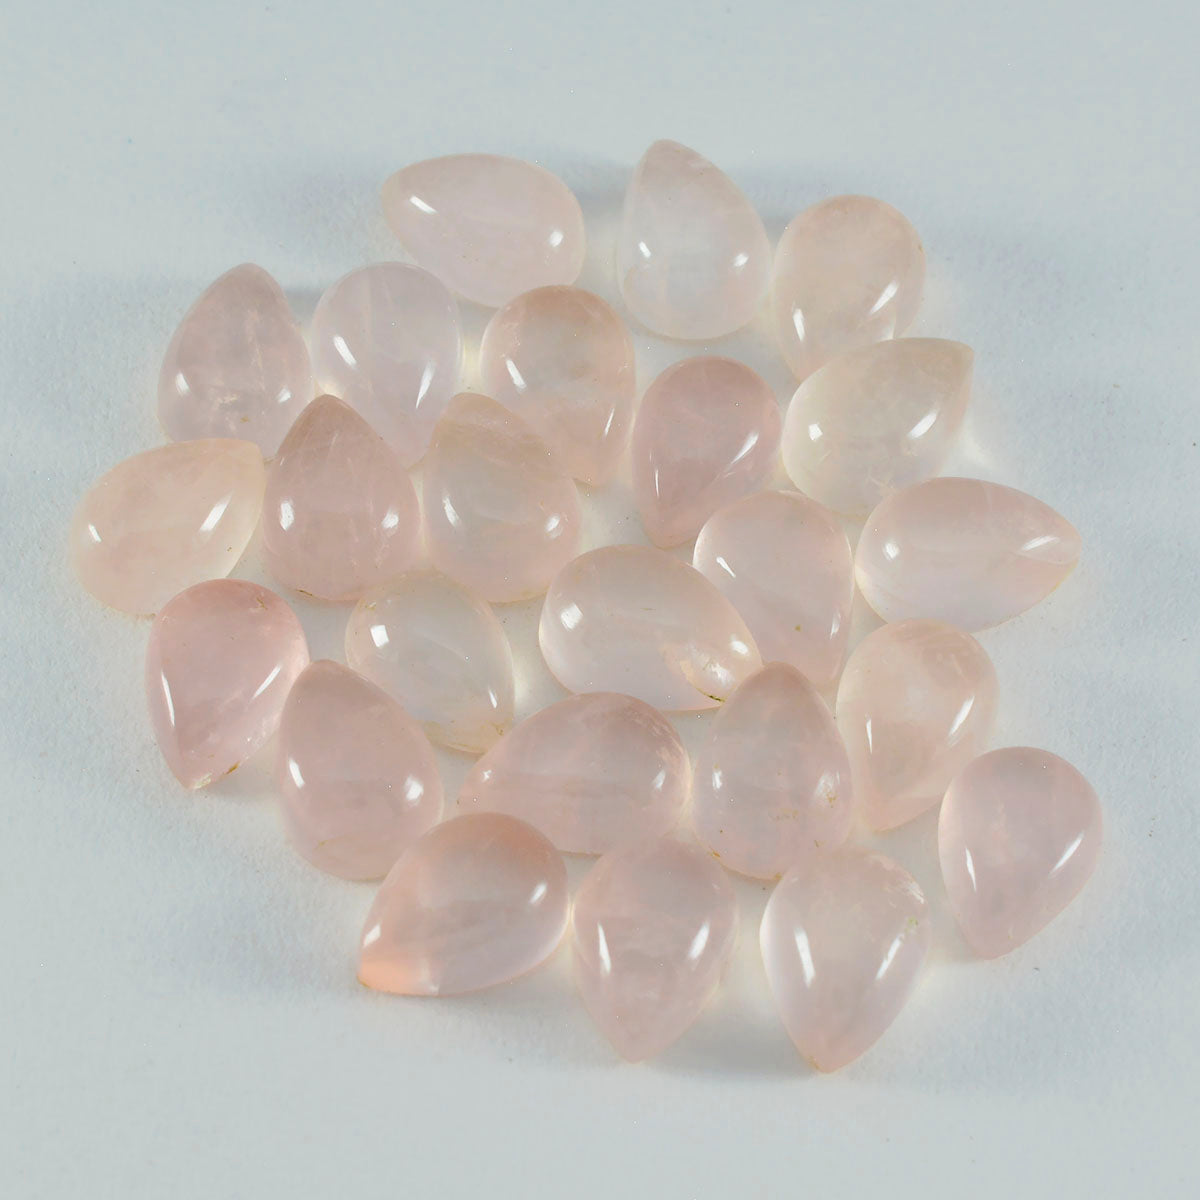 riyogems 1 шт. кабошон из розового кварца 5x7 мм в форме груши потрясающего качества, свободный драгоценный камень